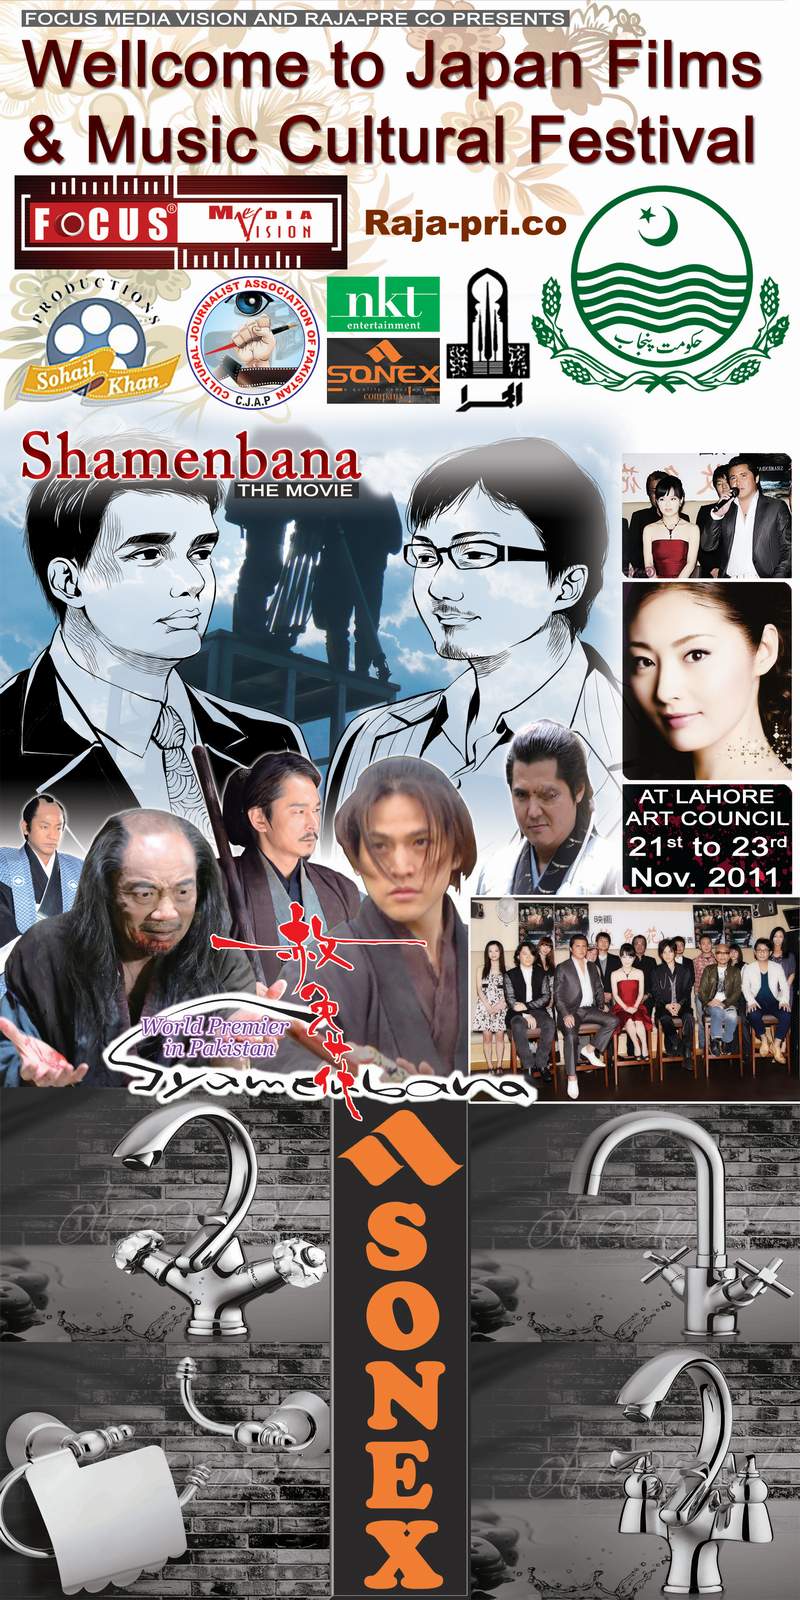 Shamenbana movie